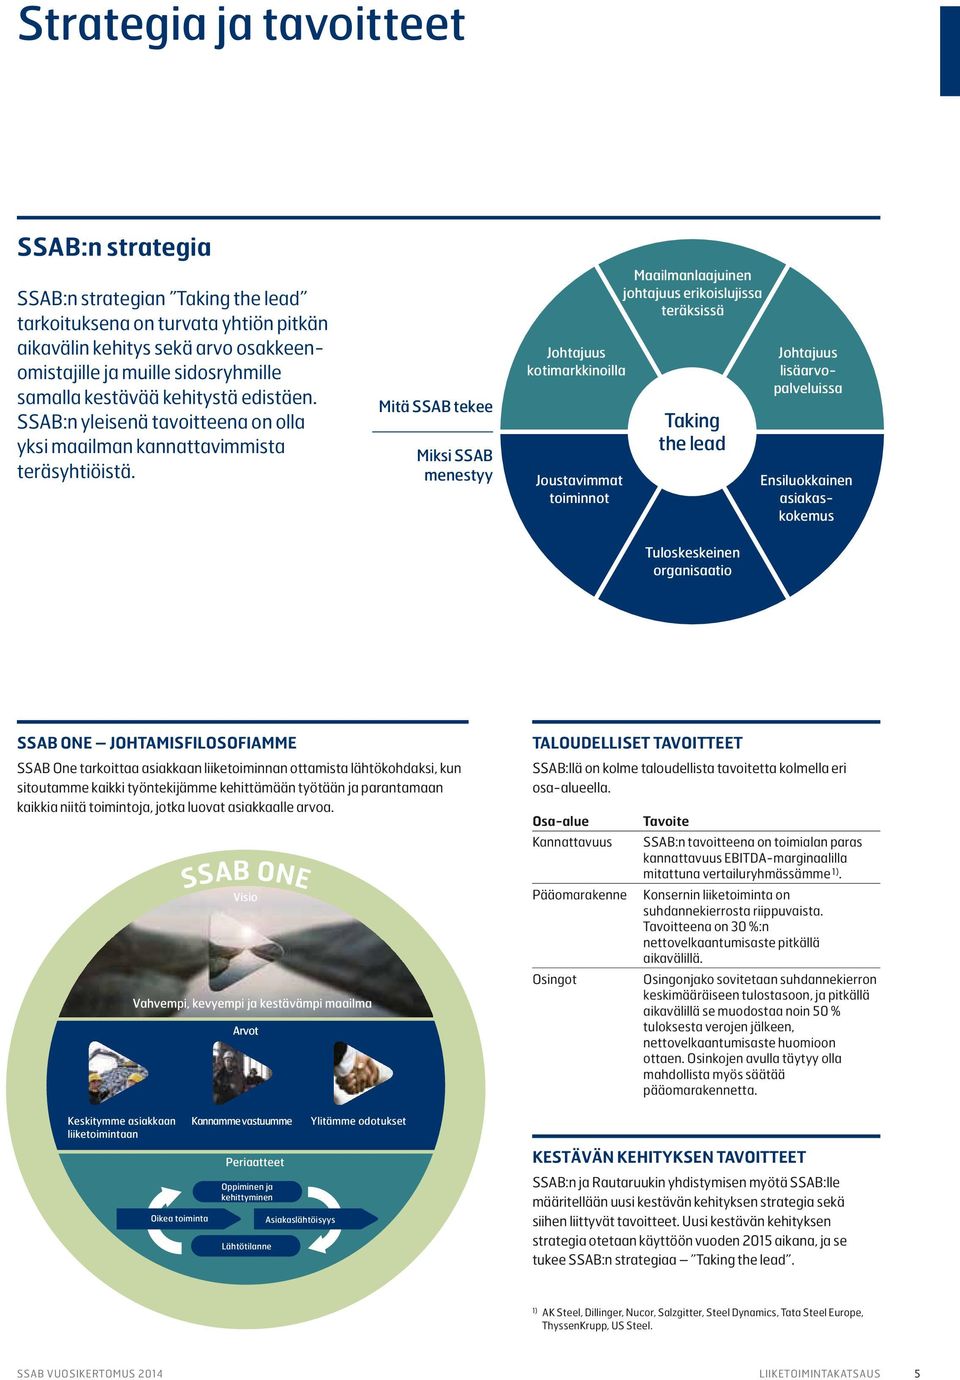 Mitä SSAB tekee Miksi SSAB menestyy Johtajuus kotimarkkinoilla Joustavimmat toiminnot Maailmanlaajuinen johtajuus erikoislujissa teräksissä Taking the lead Tuloskeskeinen organisaatio Johtajuus